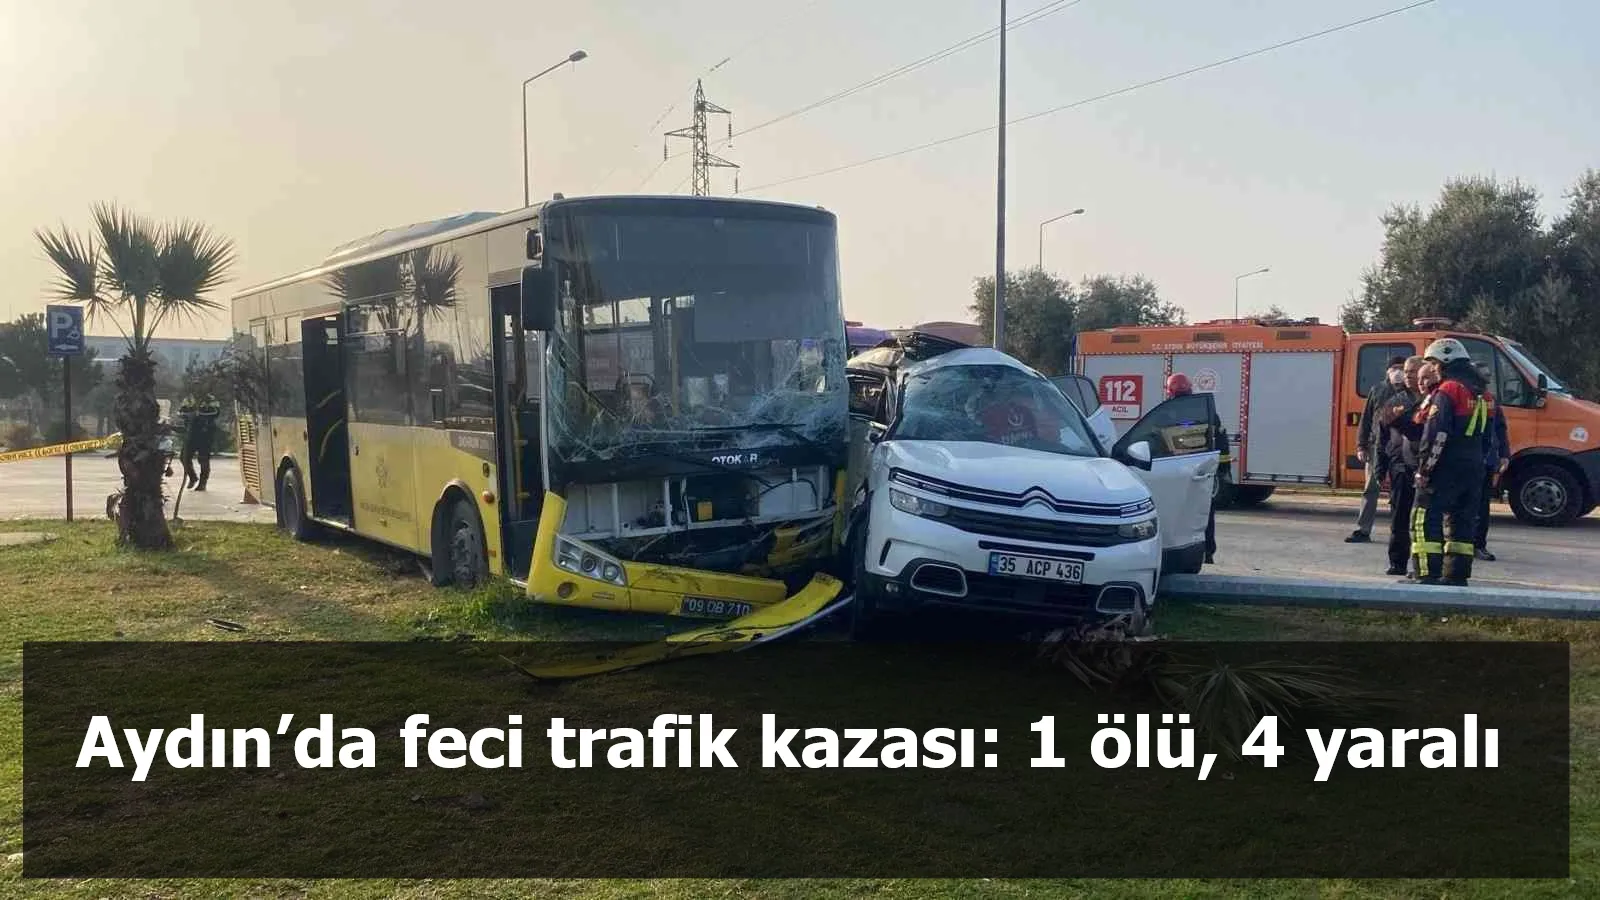 Aydın’da feci trafik kazası: 1 ölü, 4 yaralı